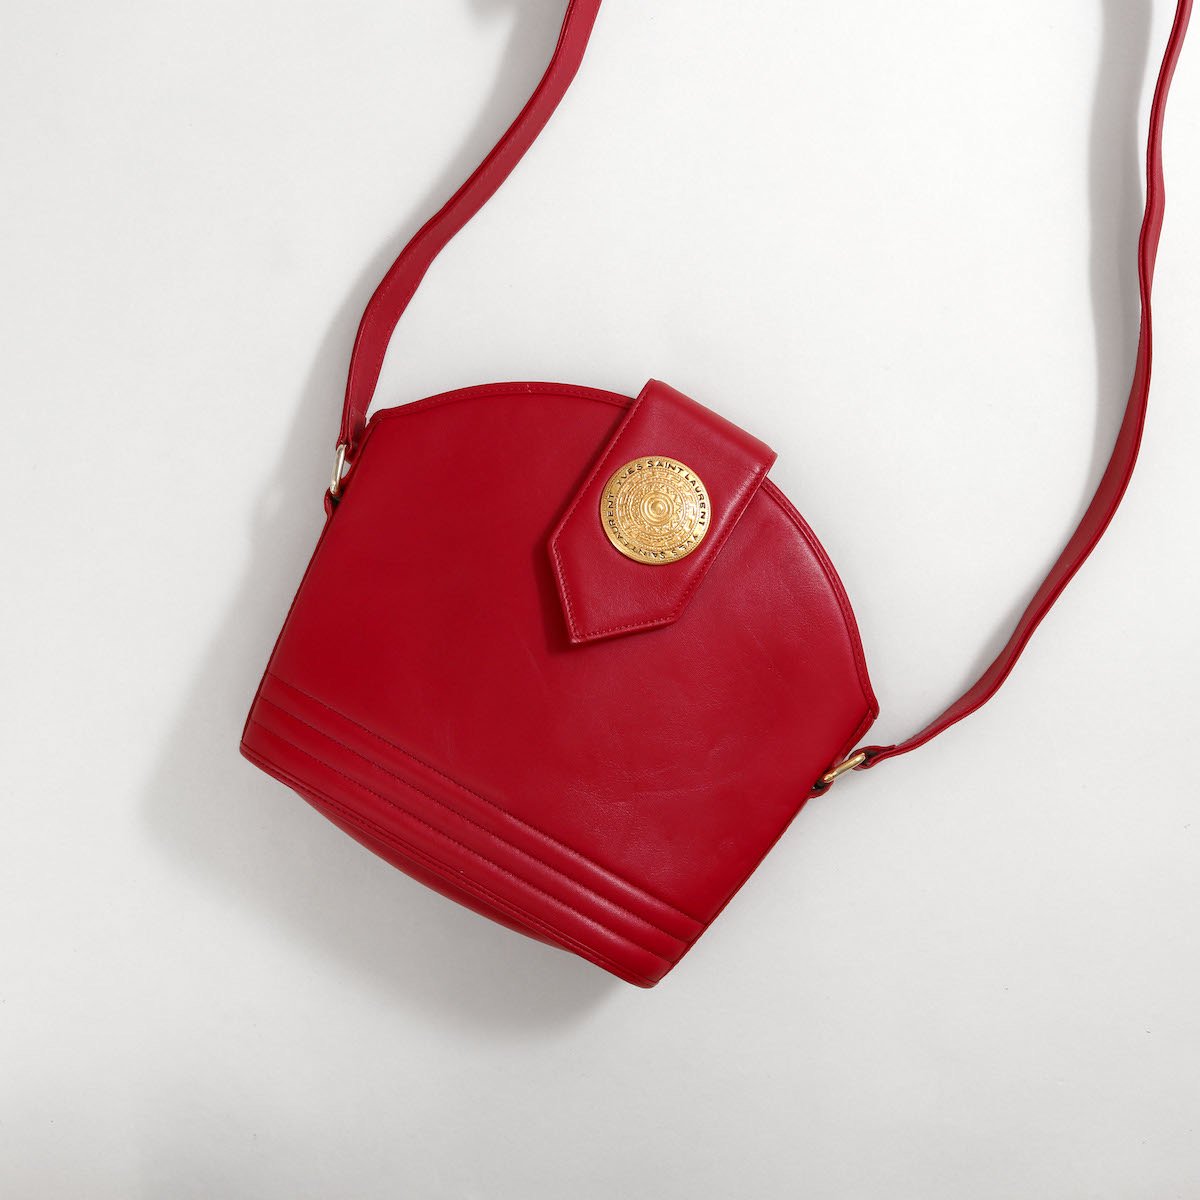 Vintage イヴサンローラン Yves Saint Laurent バッグ ショルダーバッグ カーフレザー 本革 カバン 鞄 レディース レッド